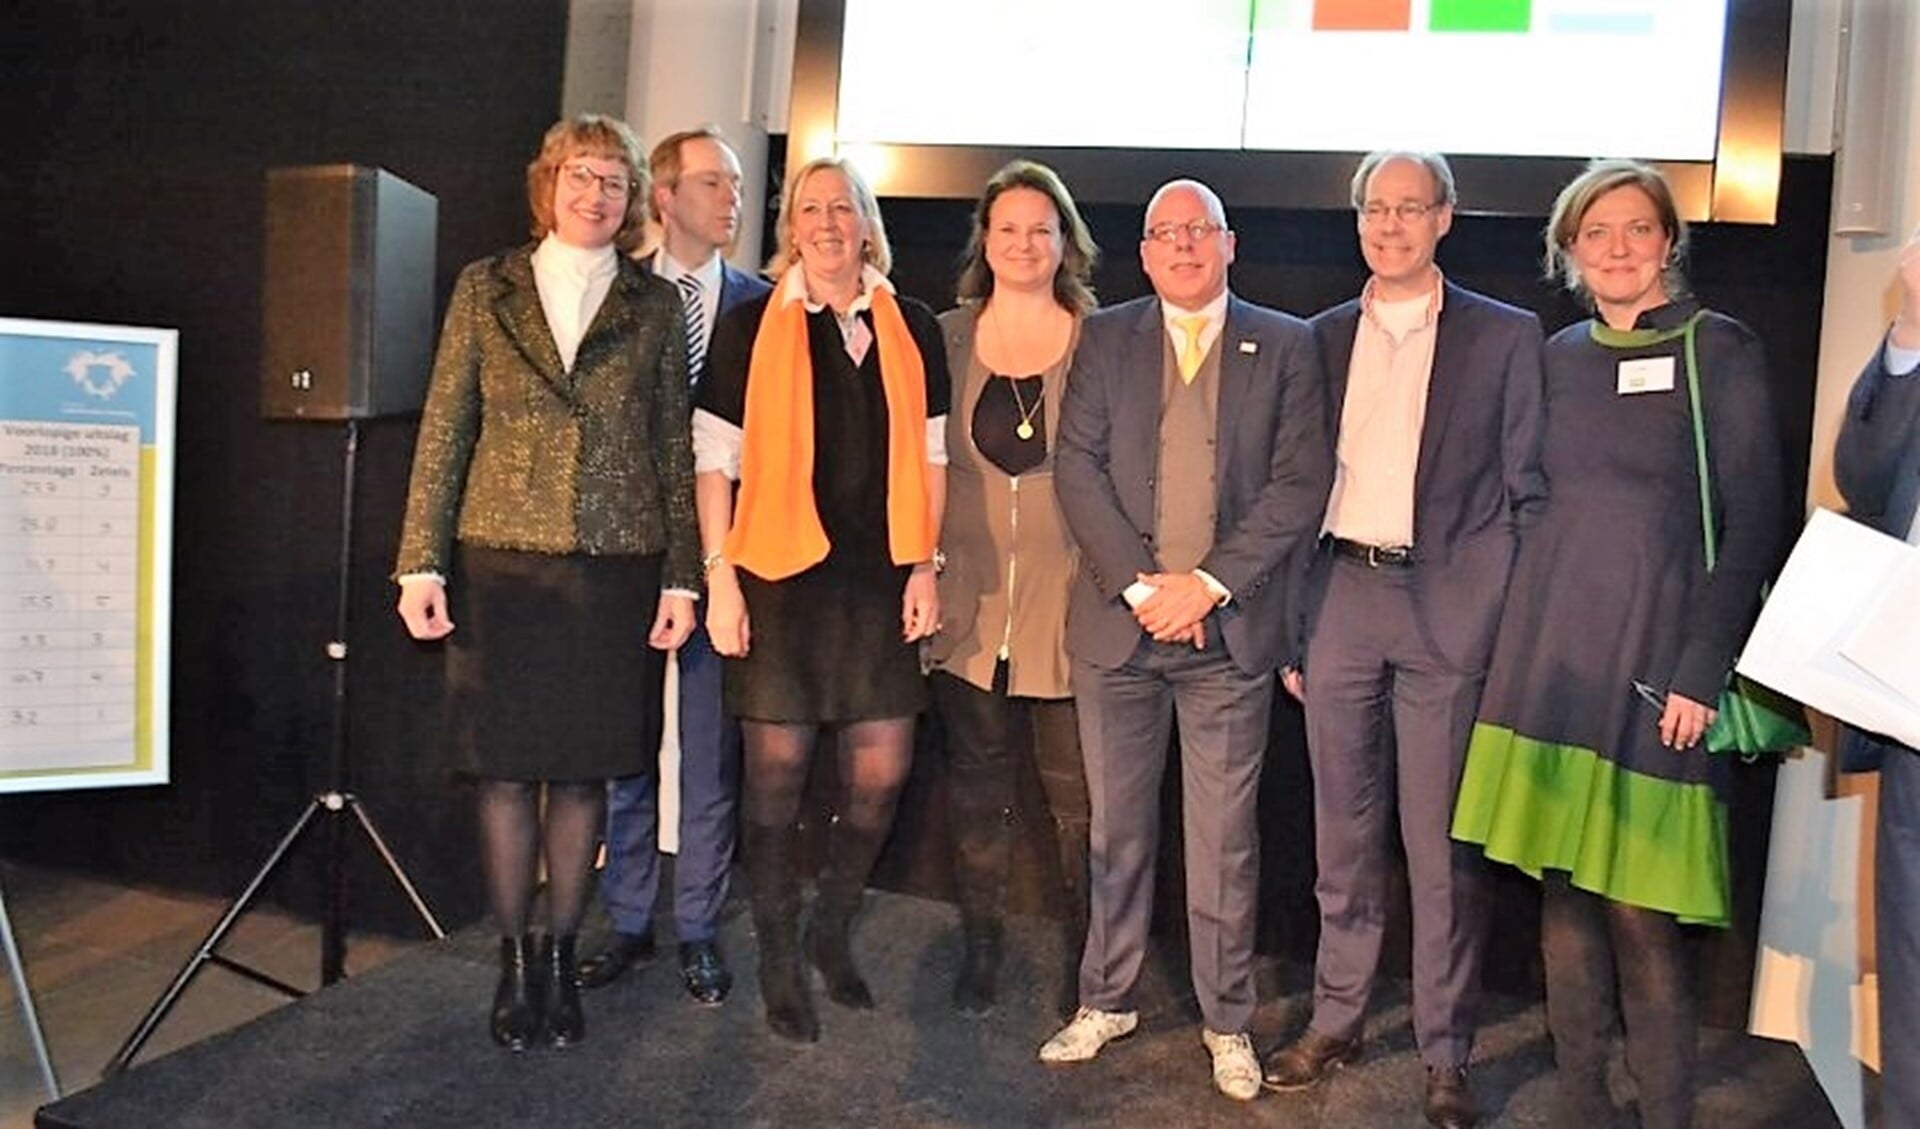 De lijsttrekkers van de deelnemende partijen aan het eind van de verkiezingsuitslagavond (foto/tekst: Inge Koot).